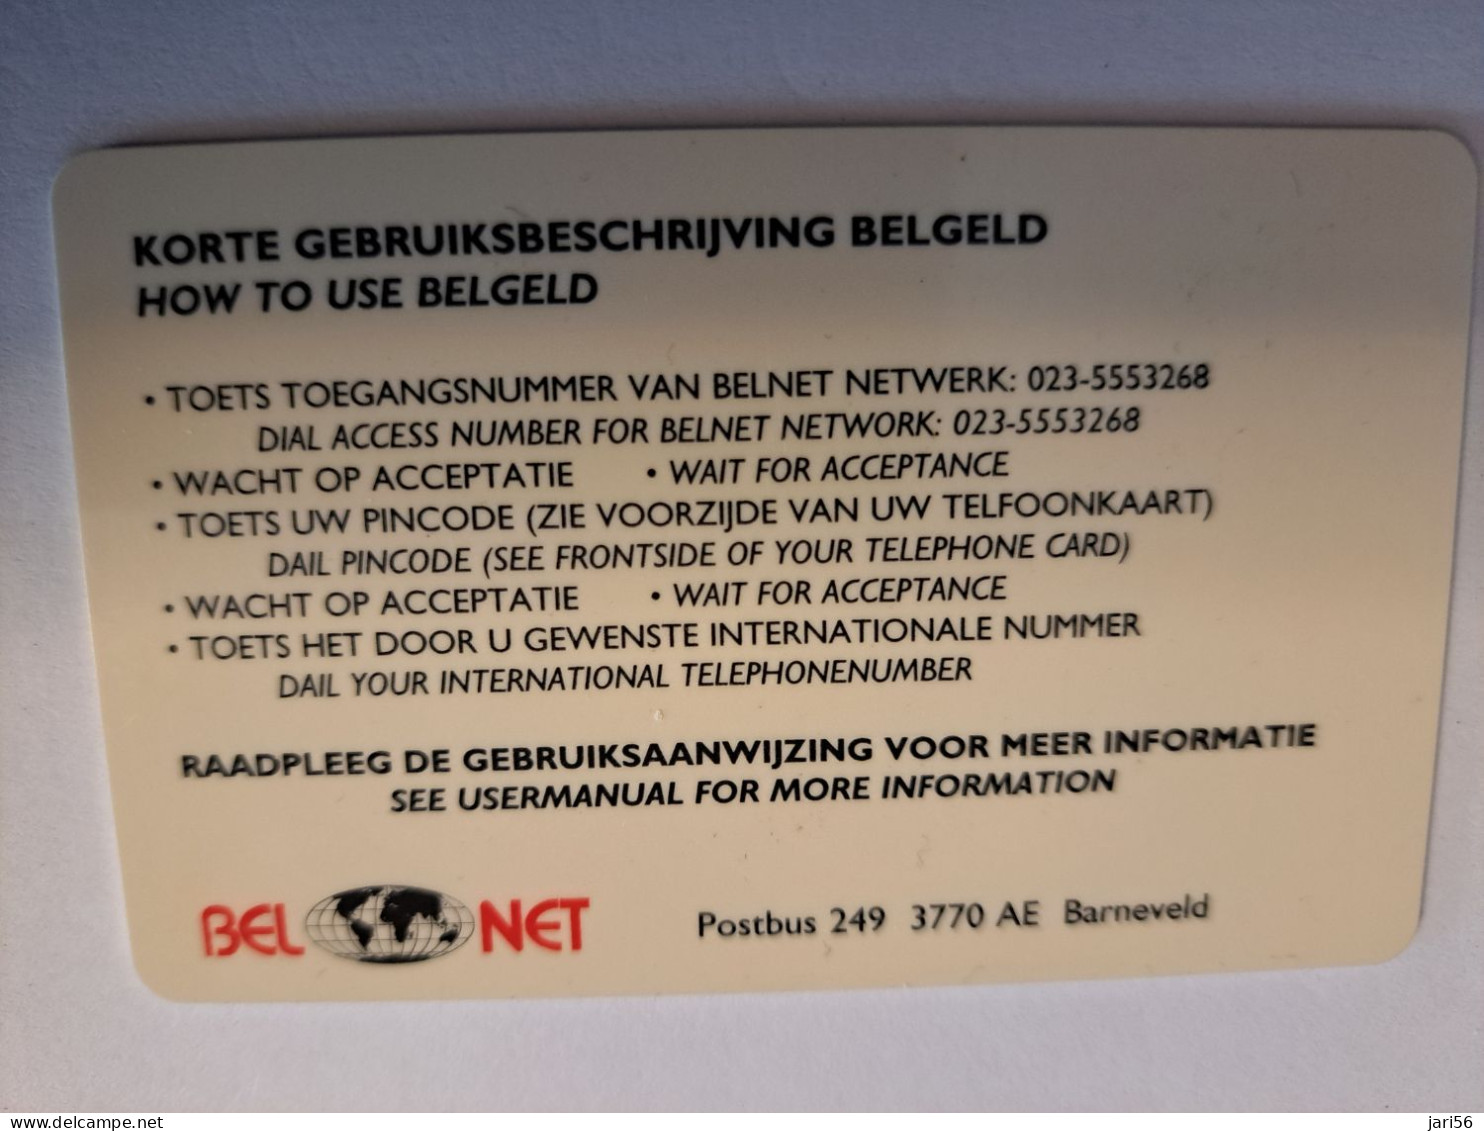 NETHERLANDS  PREPAID / HFL 50,- / INDONESIA / BEL NET/ BELGELD/ THICK CARD  / / OLDER CARD ! / USED  CARD   ** 16219** - GSM-Kaarten, Bijvulling & Vooraf Betaalde